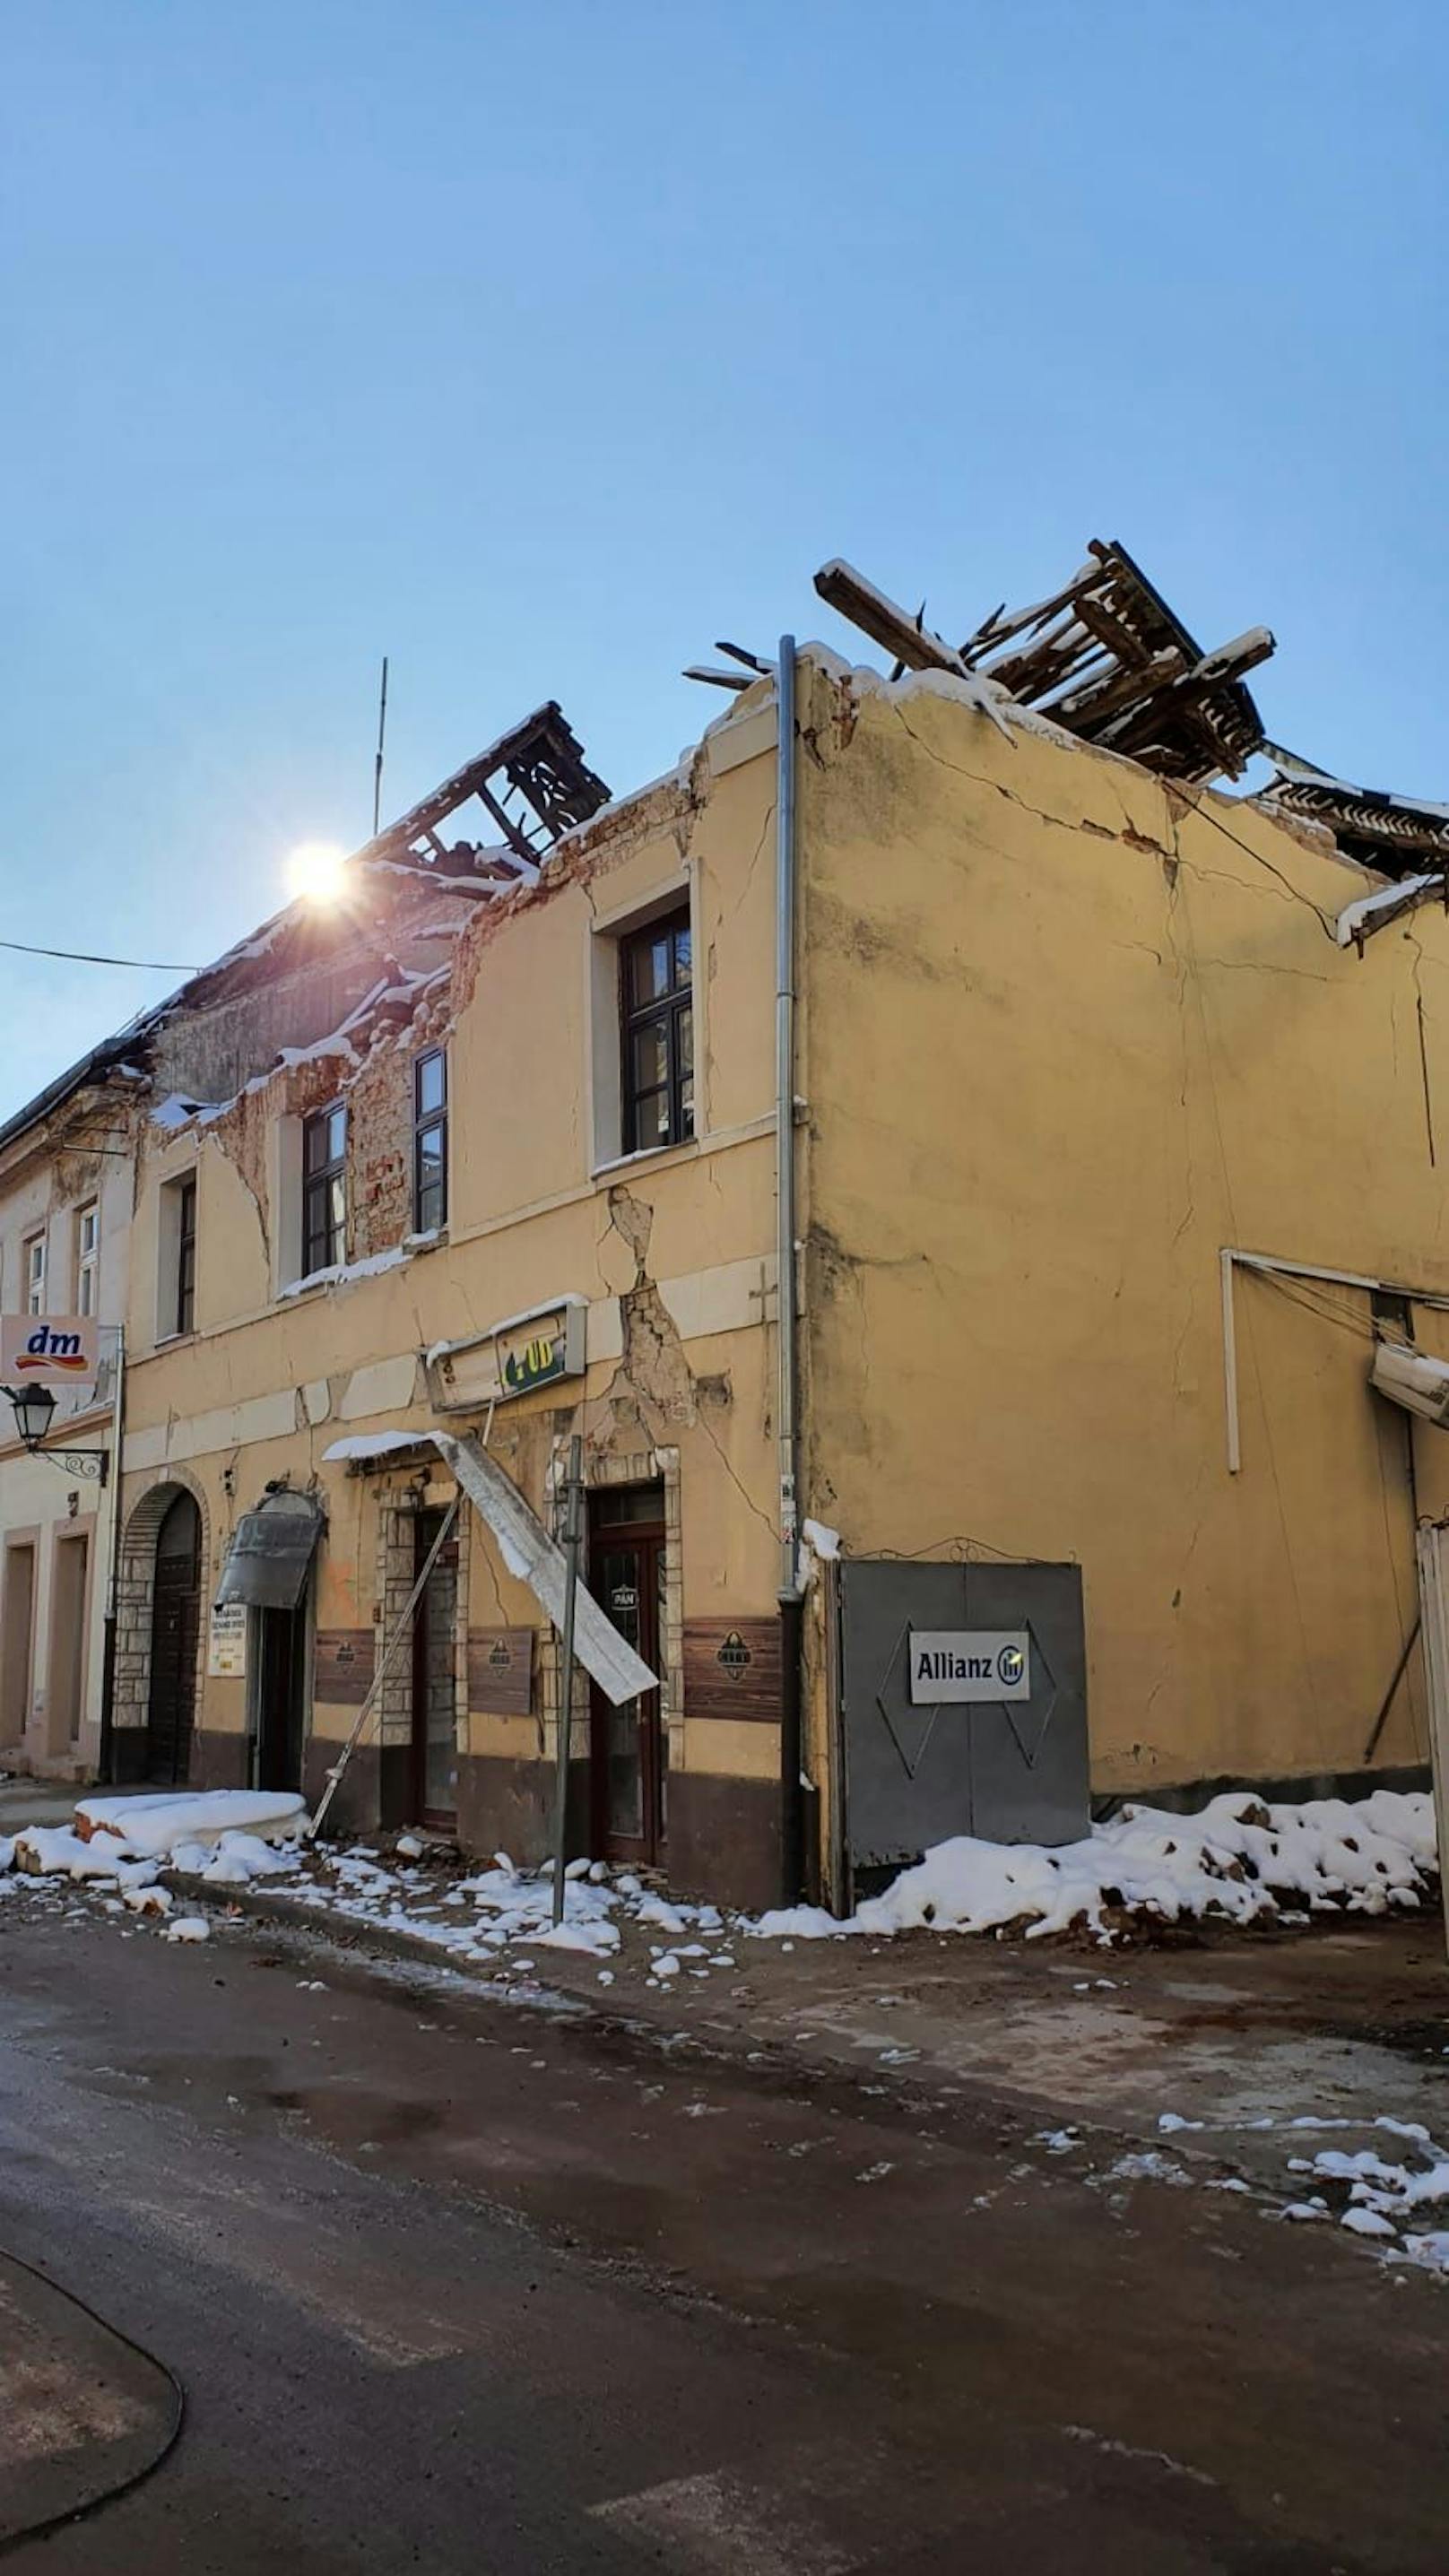 Bilder zeigen, wie schwer Kroatien erschüttert wurde. Rund 1.000 Häuser wurden zerstört.